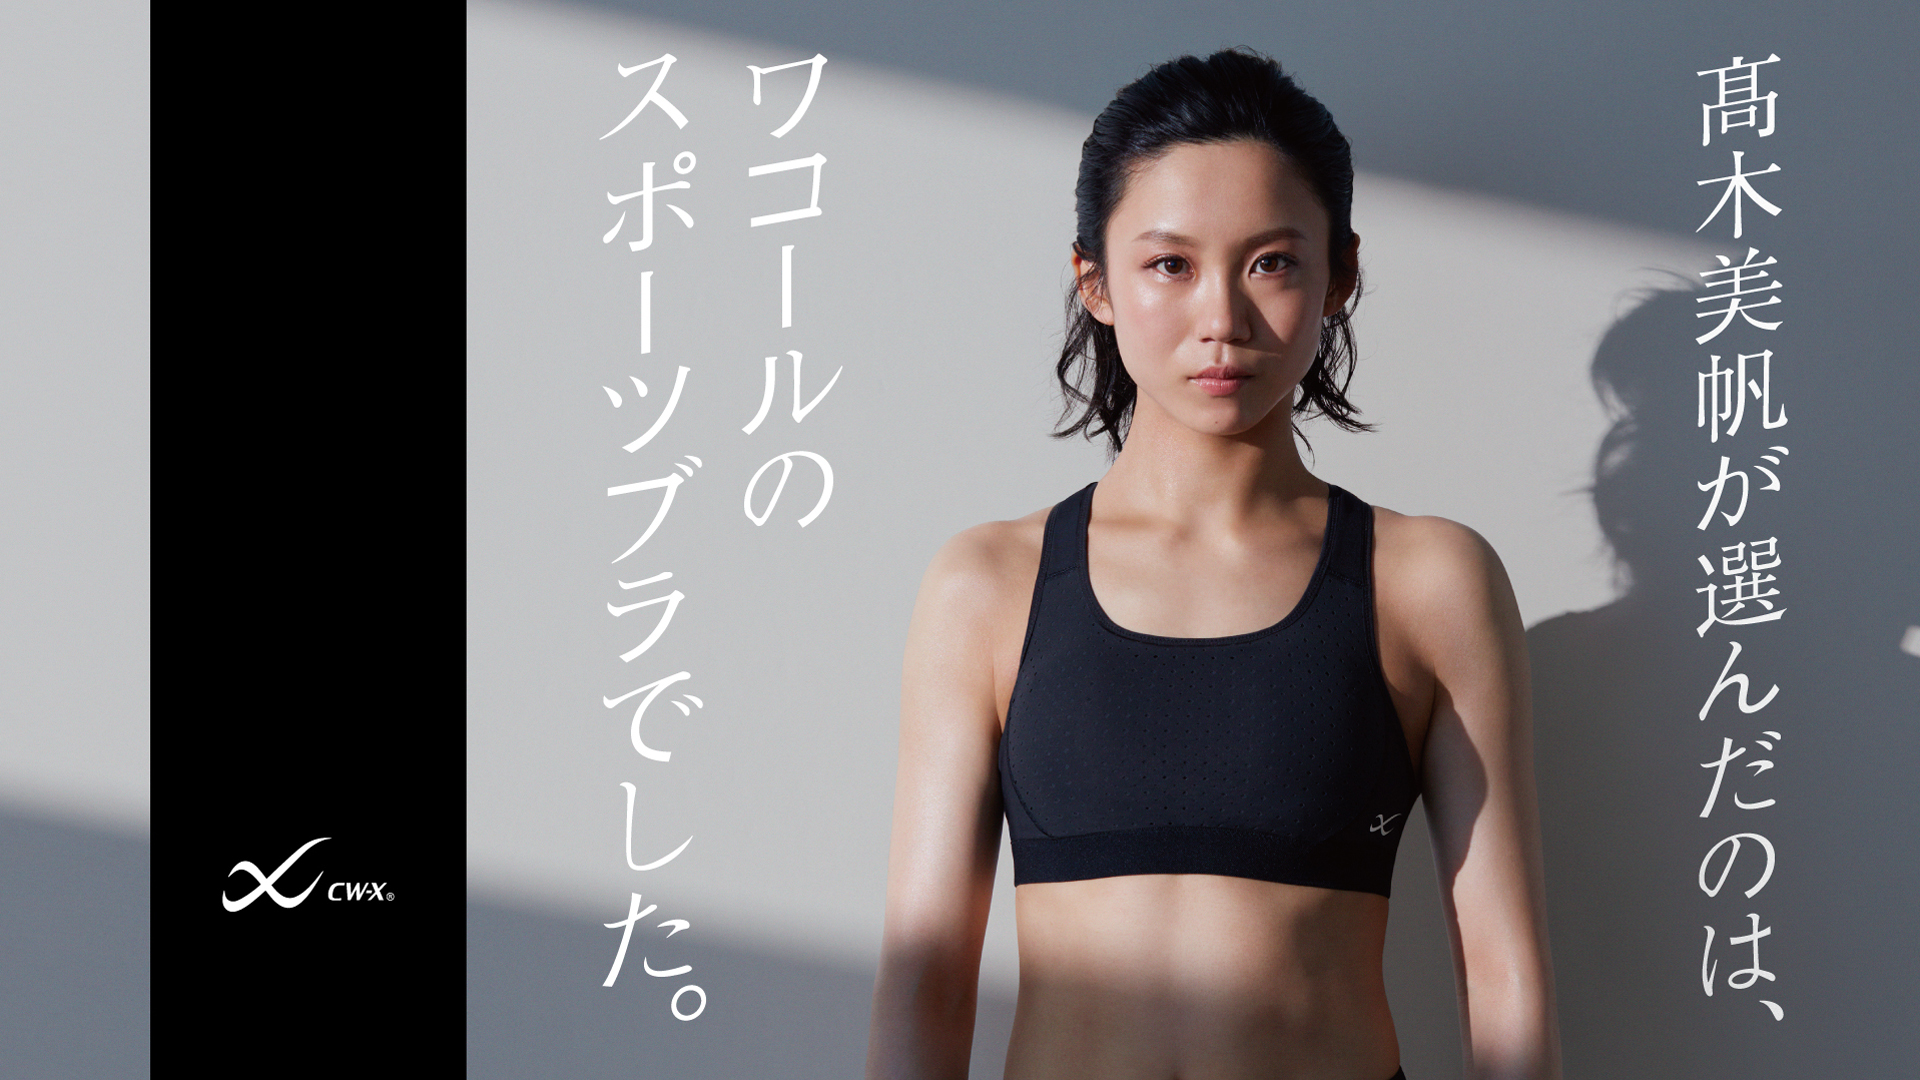 女子スピードスケート高木美帆選手を Cw X の広告に起用 株式会社ワコールのプレスリリース